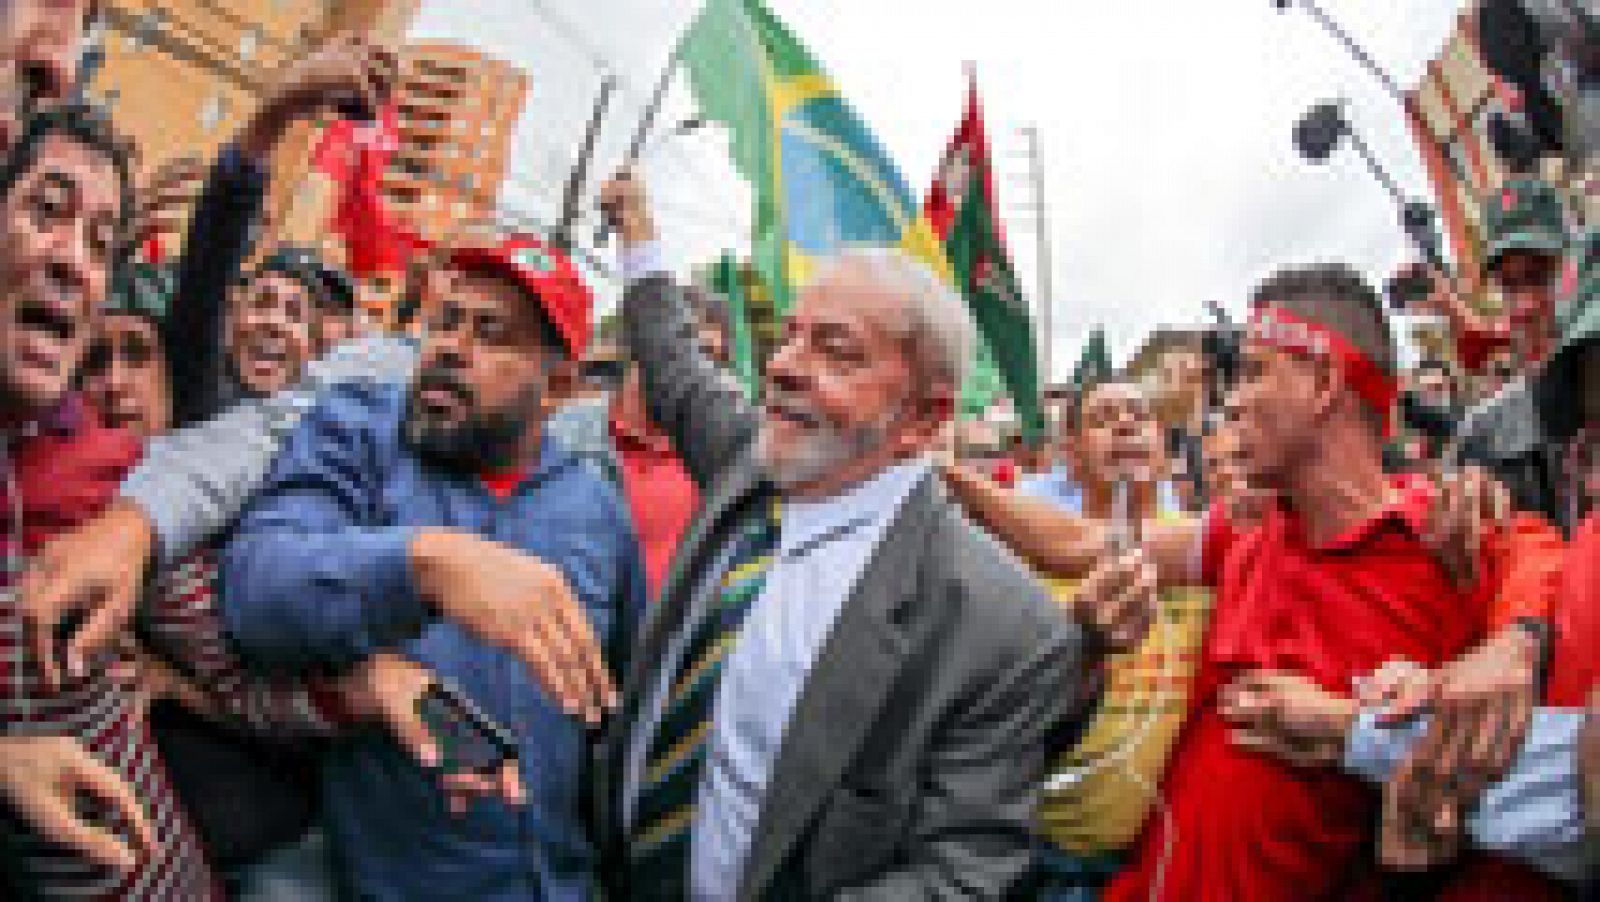 El ex presidente brasileño, Lula Da Silva, niega ente el juez las acusaciones de corrupción